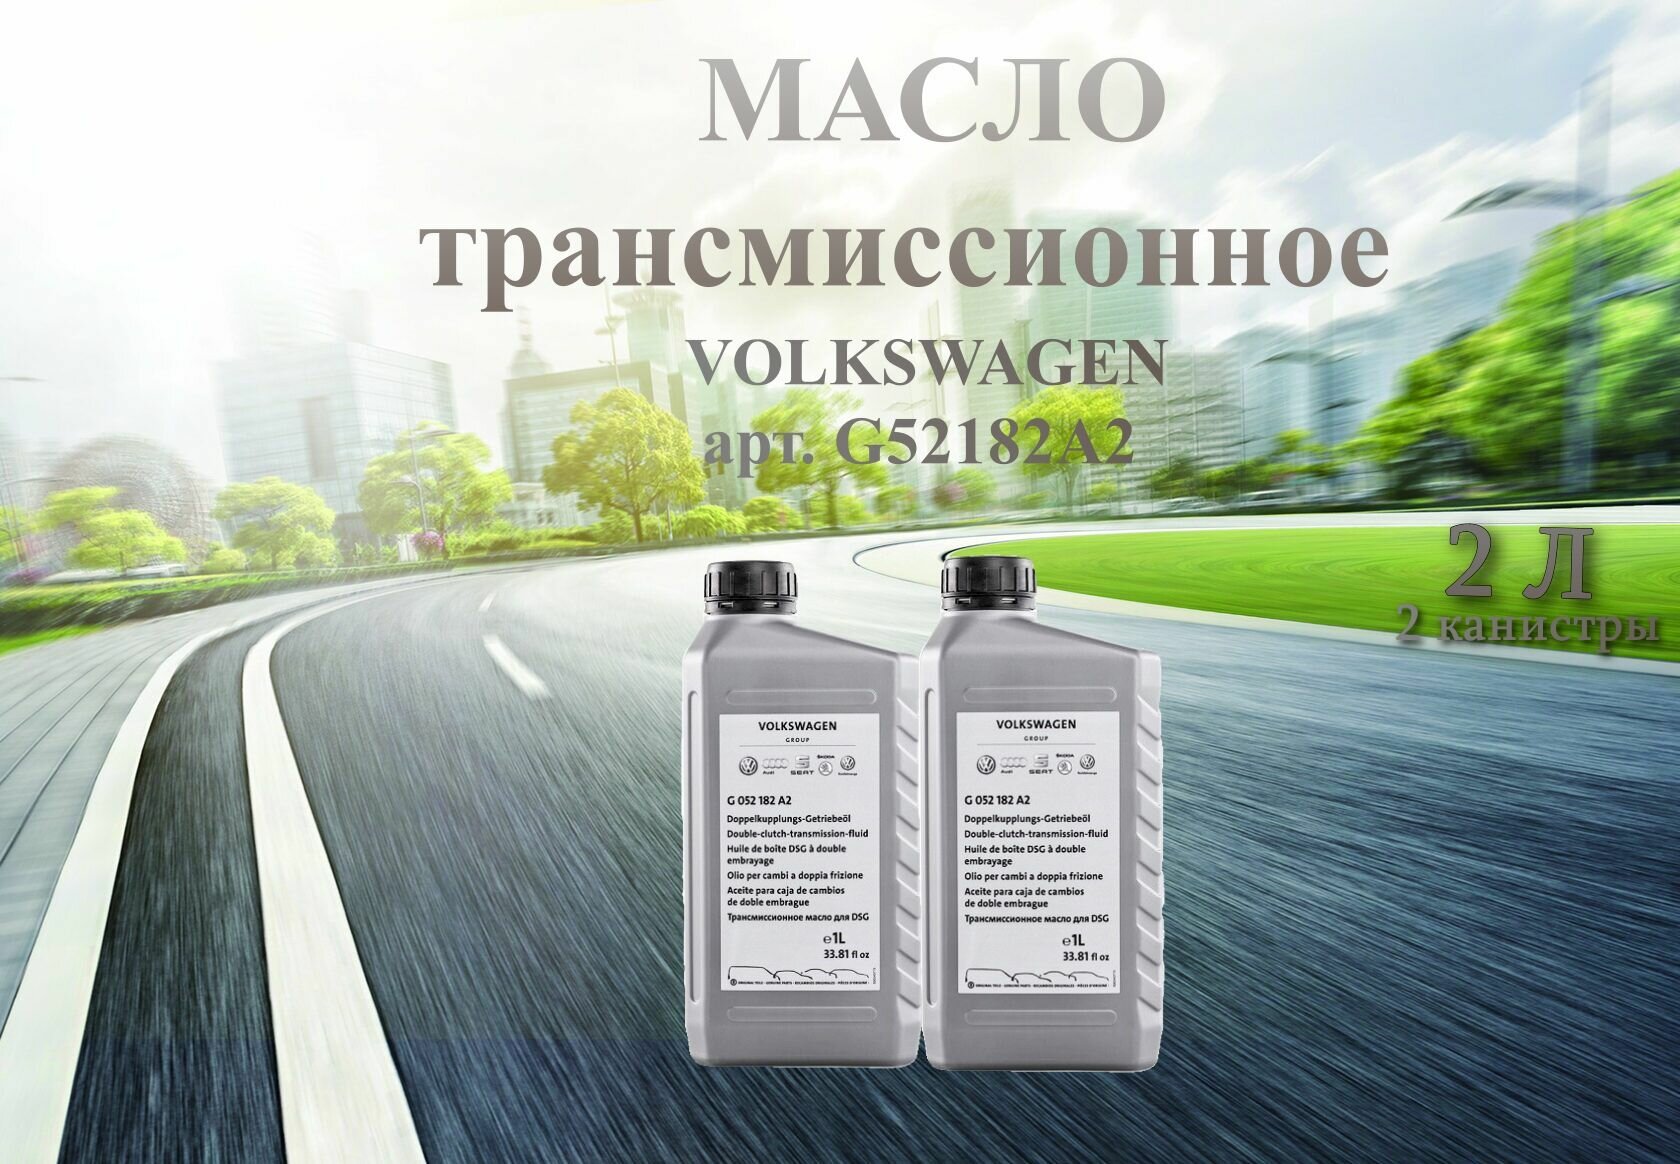 Масло трансмиссионное для Volkswagen 75W-90 для DSG 1 л арт. G052182A2 / 2 литра / 2 штуки